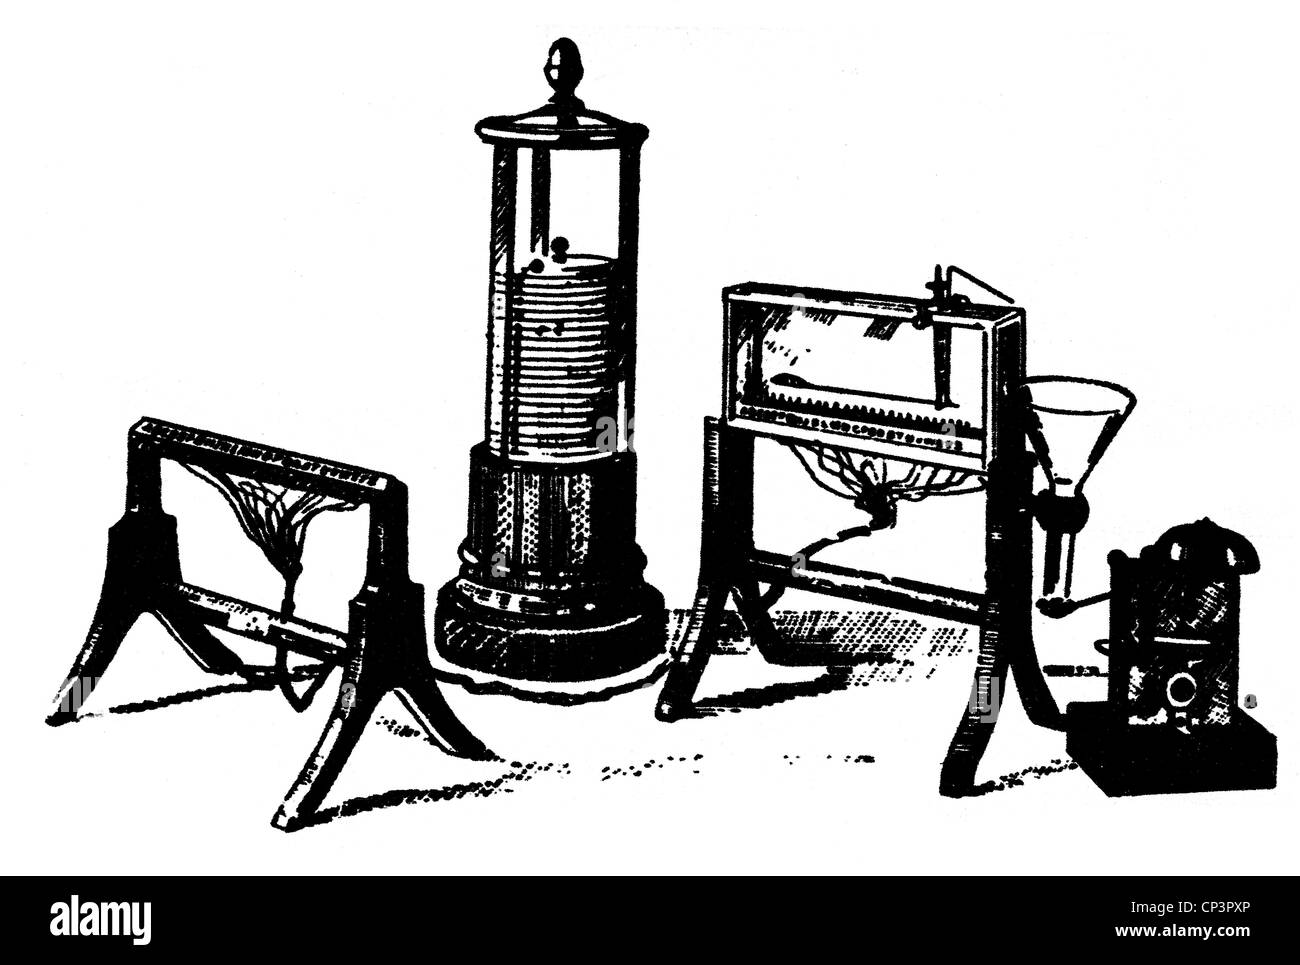 Soemmering, Samuel Thomas von, 28.1.555 - 2.3.1830, deutscher Arzt, Naturwissenschaftler, Erfinder, Werk, sein elektrochemischer Telegraf (1809), Stockfoto